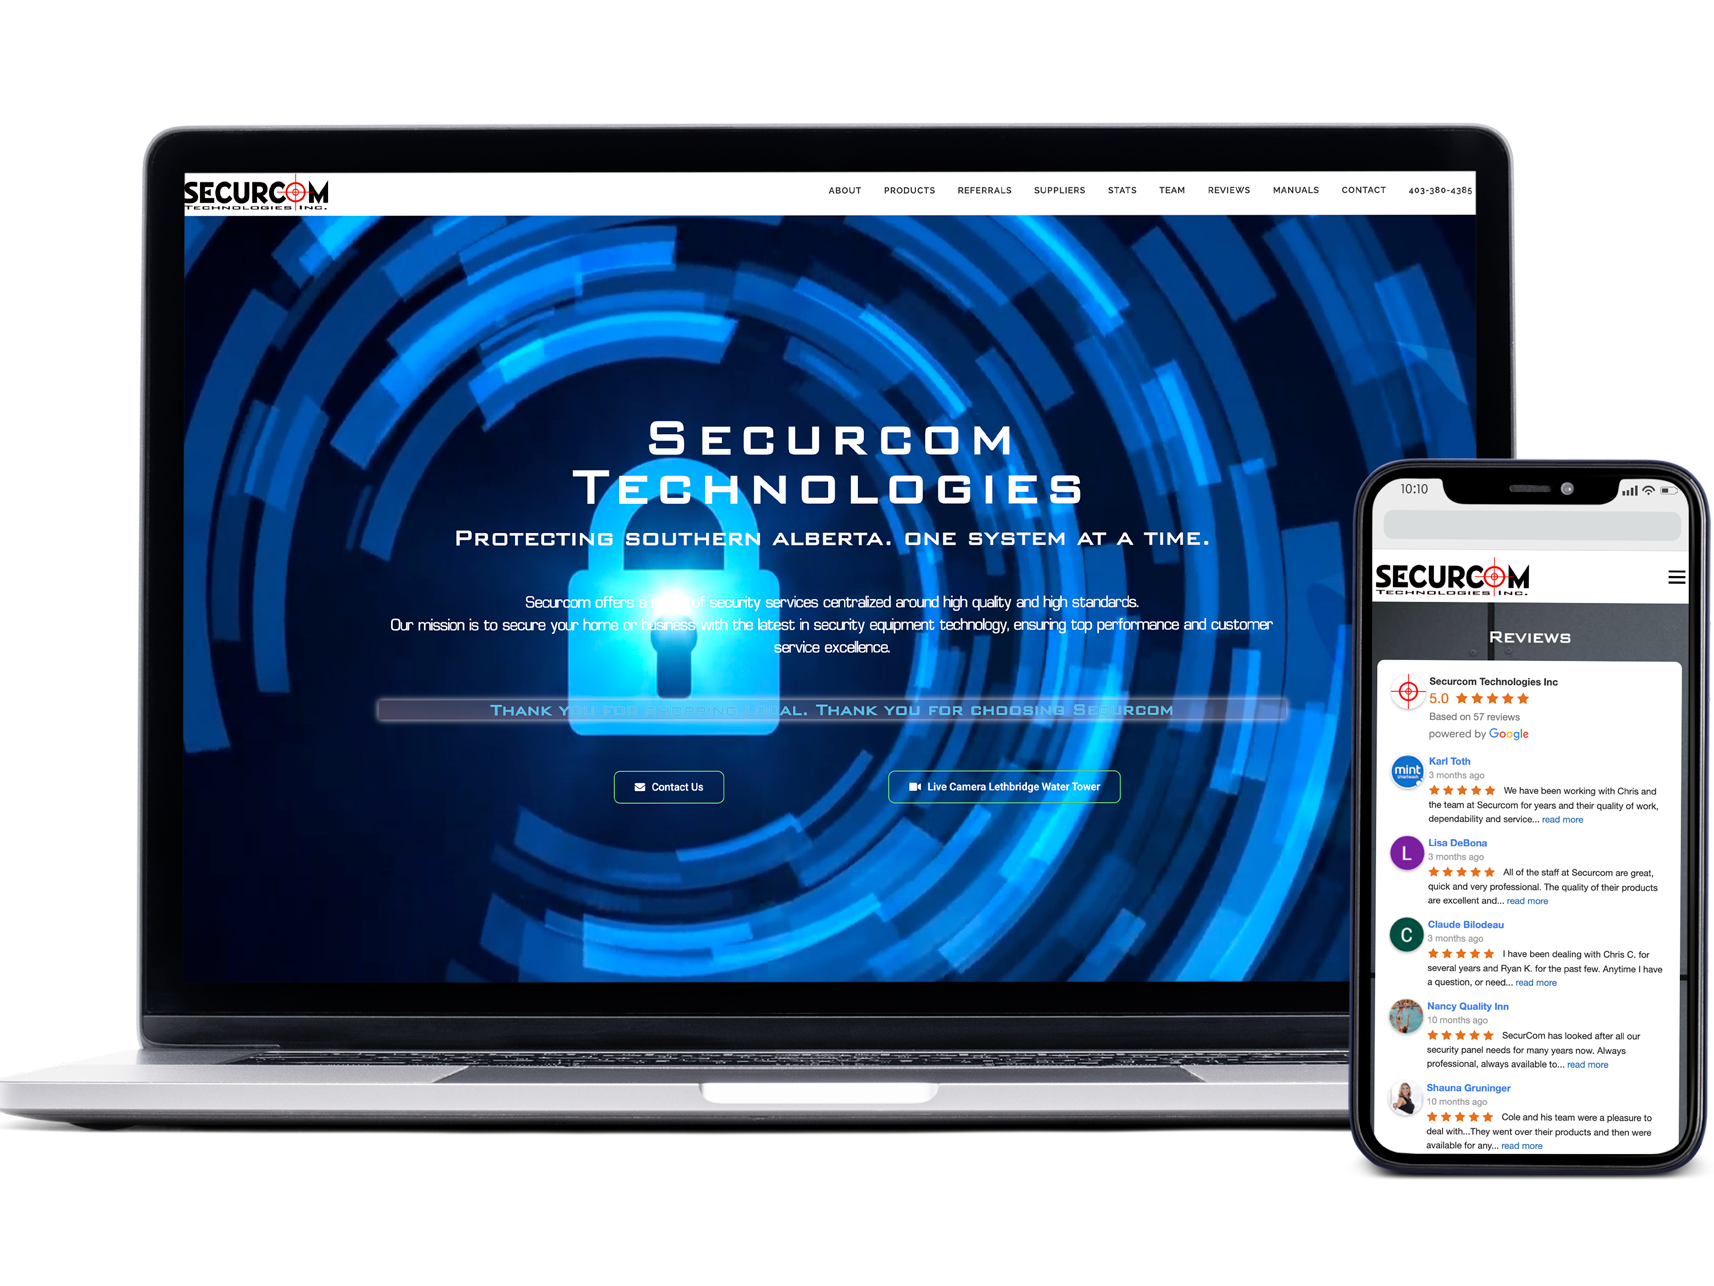 securcom security website design template mockup